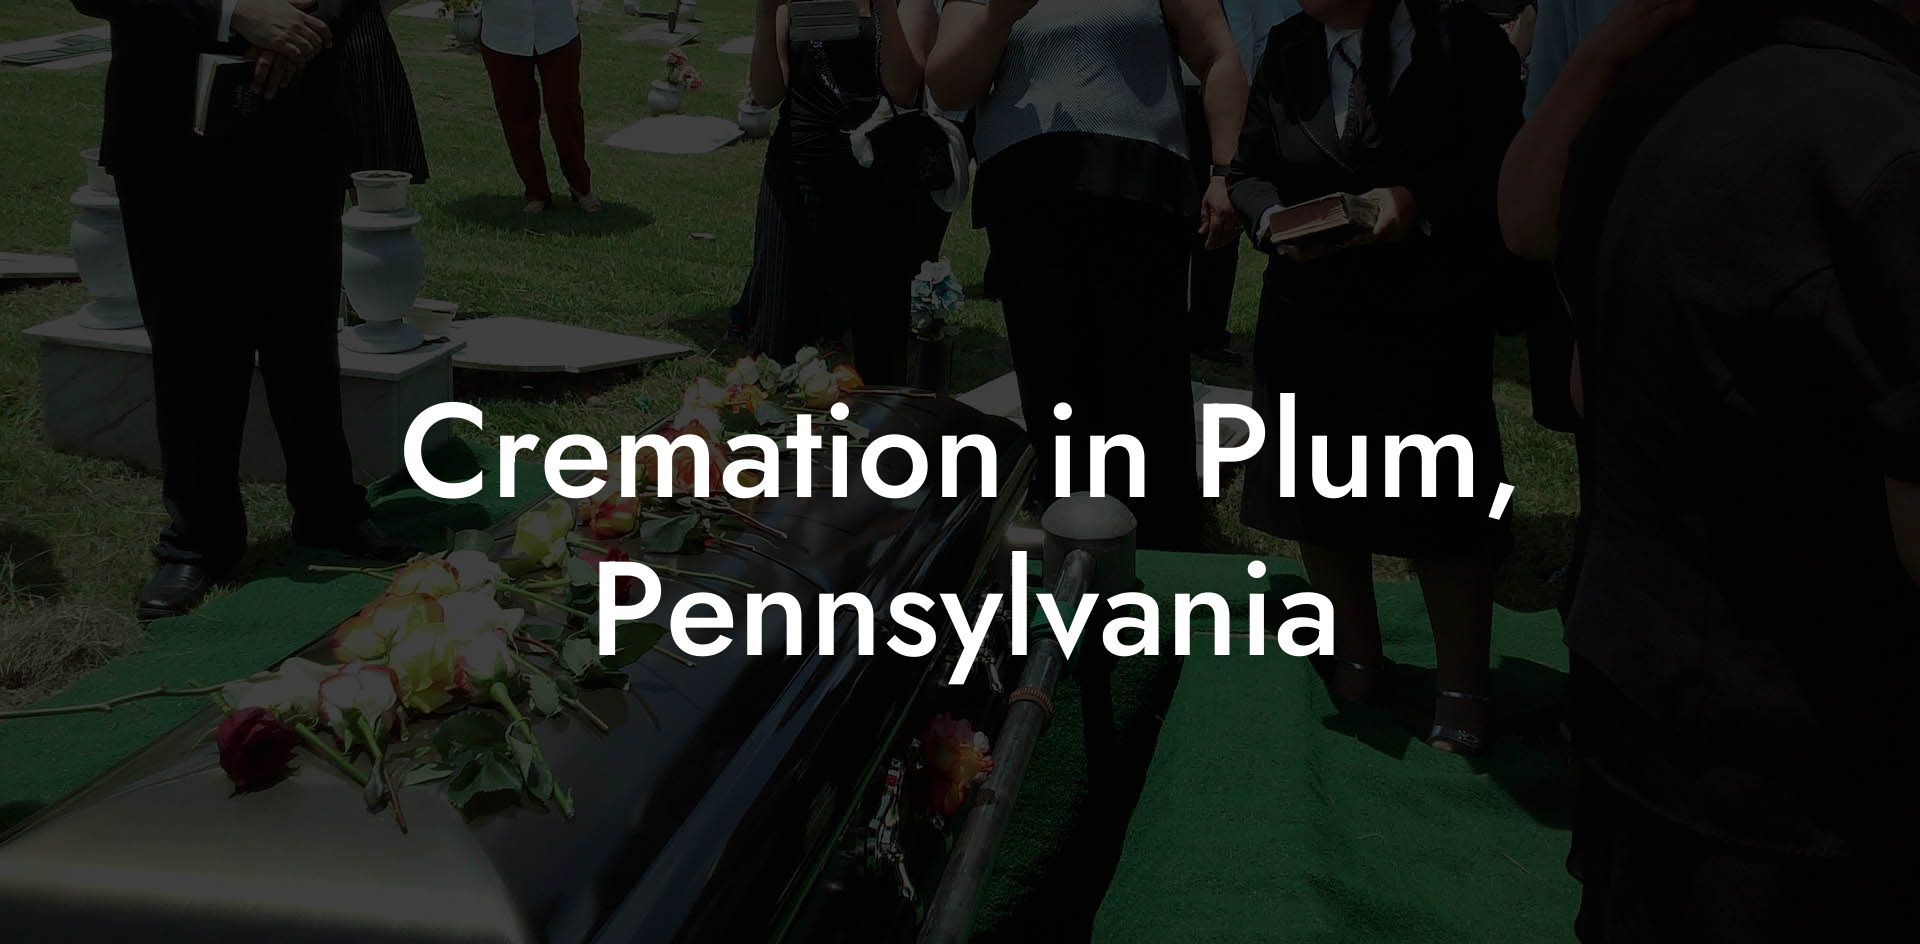 Cremation in Plum, Pennsylvania